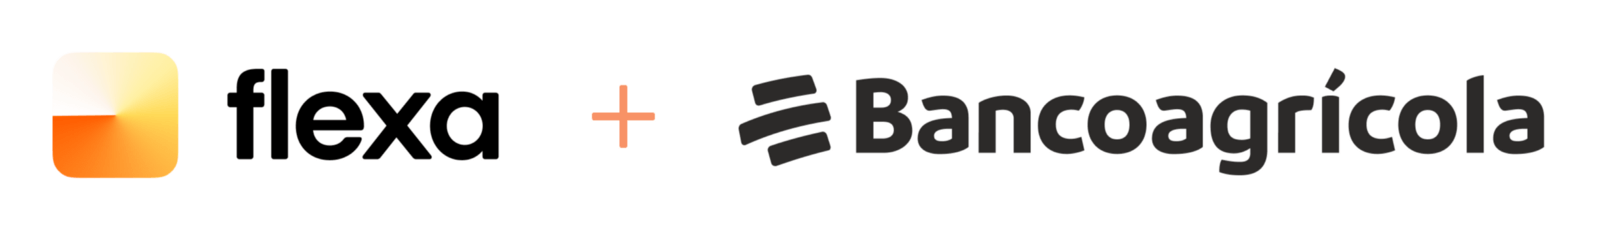 Bancoagrícola a conclu un partenariat avec Flexa pour activer les paiements en bitcoins (BTC)